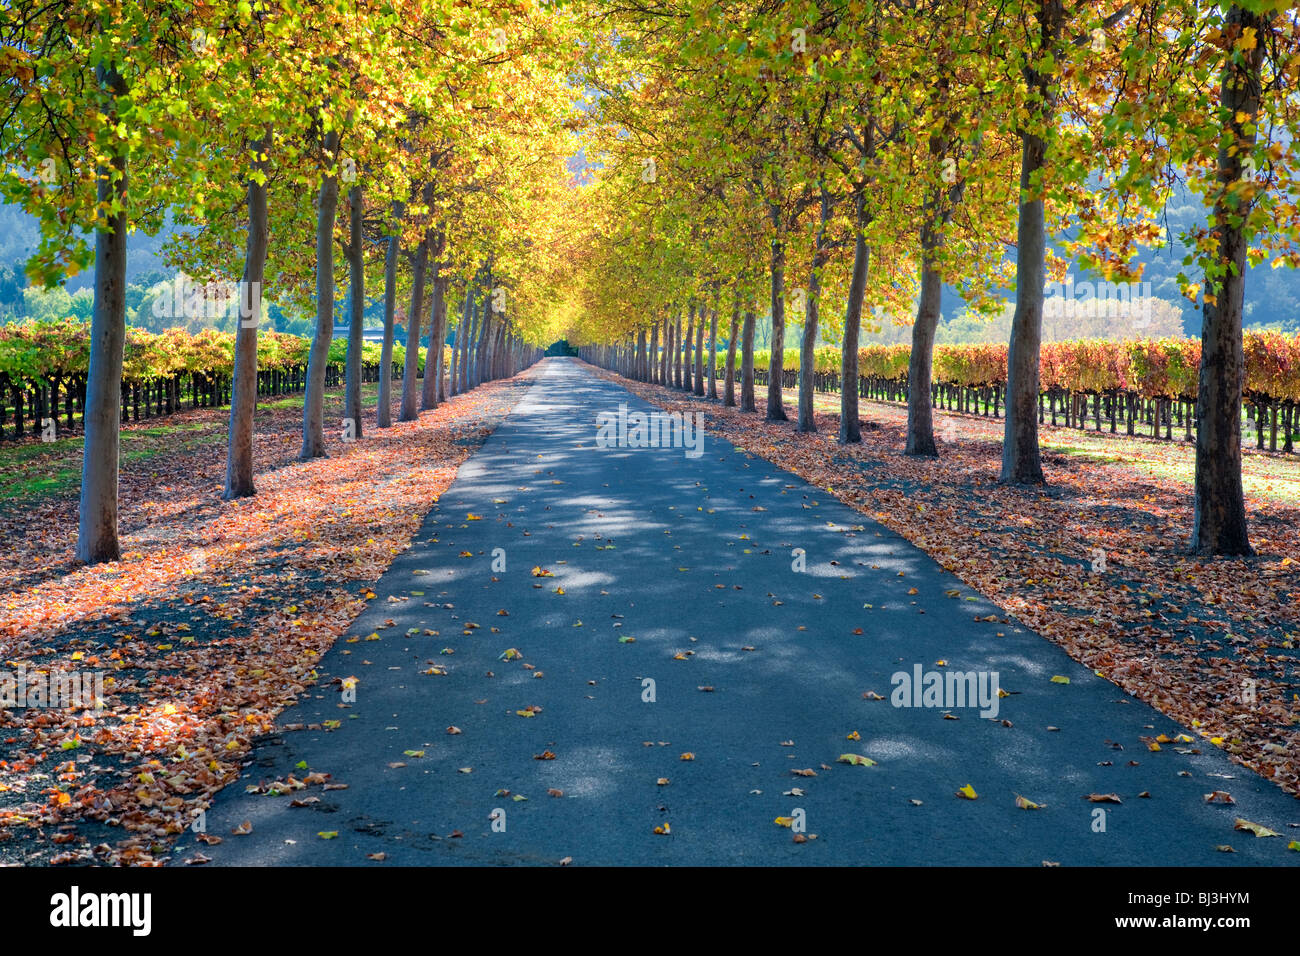 Viale alberato strada con uva vigneto in autunno a colori. Napa Valley, California. Foto Stock